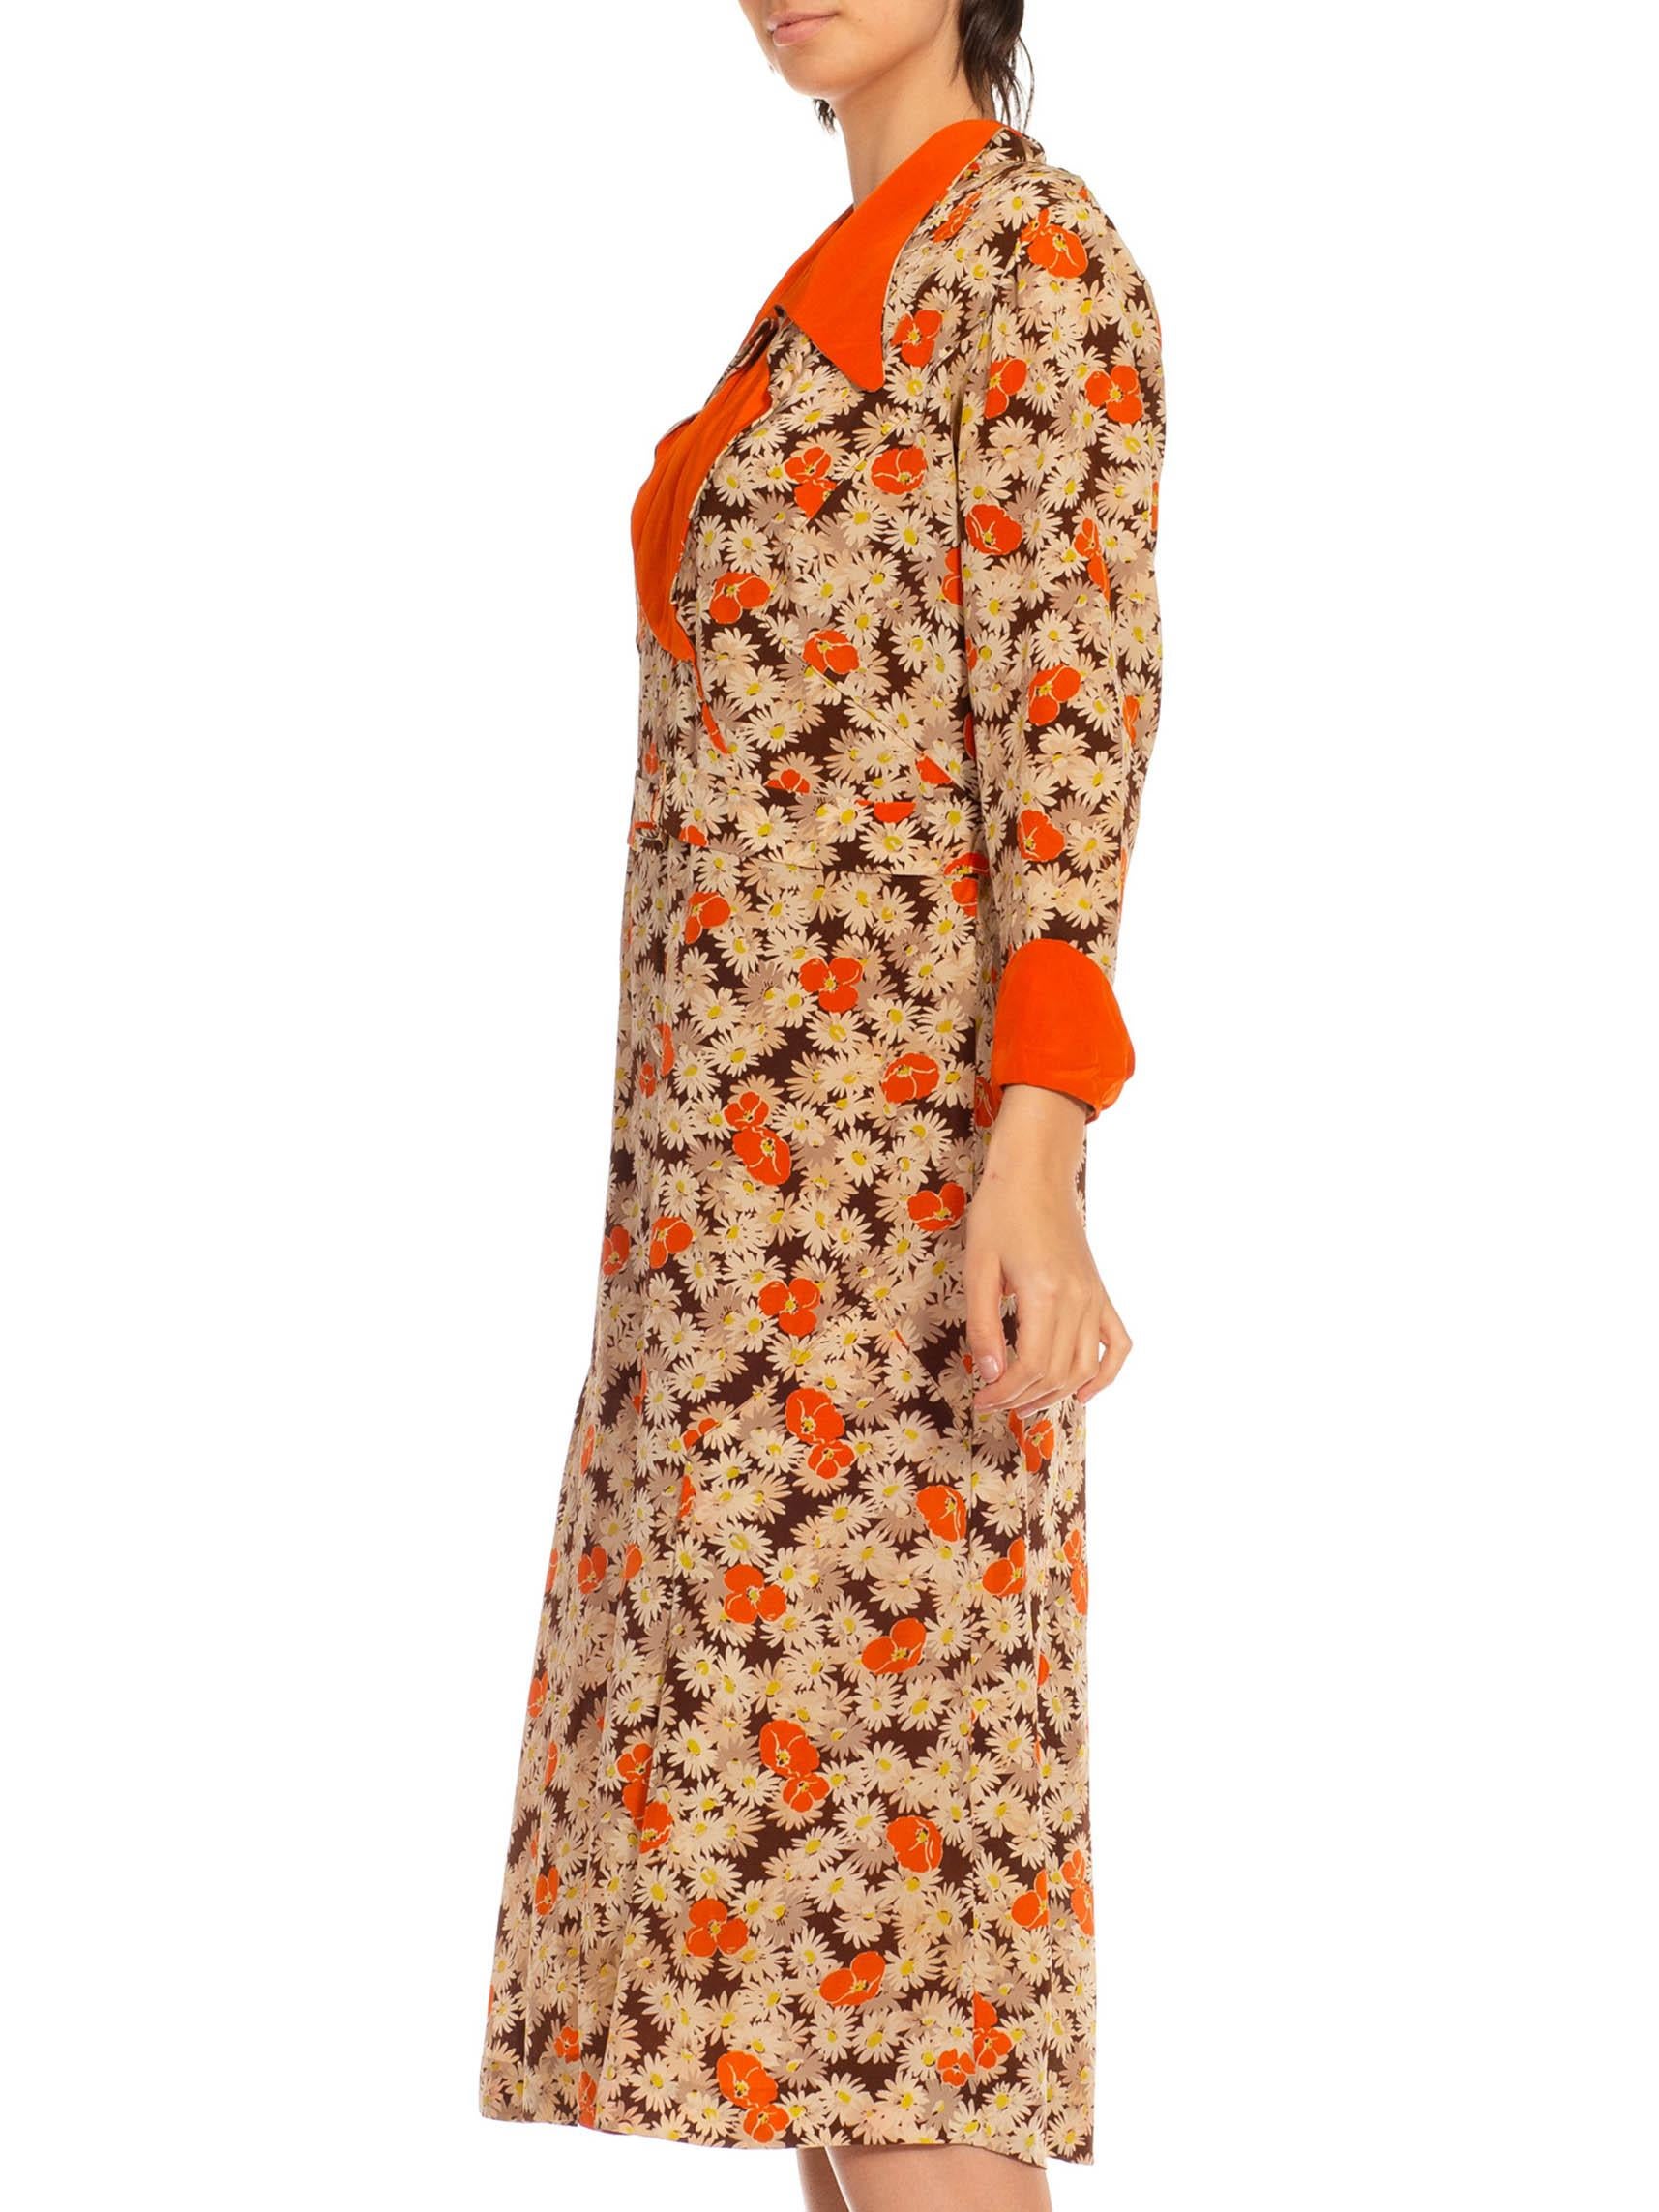 robe imprimée marguerite coquelicot en soie orange et crème 1930S